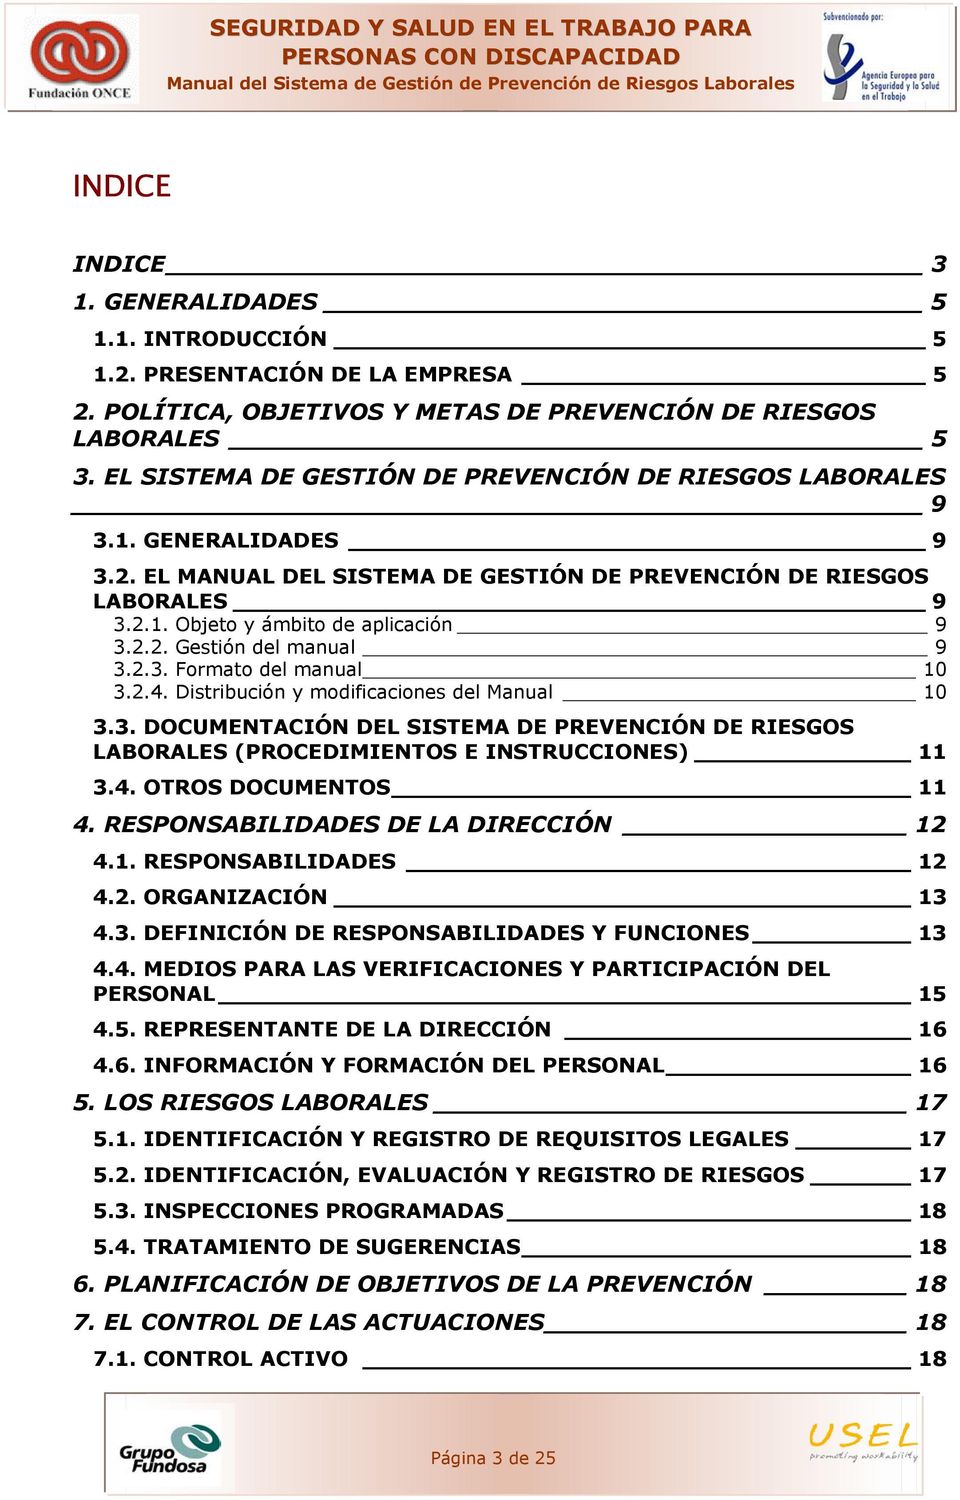 2.3. Formato del manual 10 3.2.4. Distribución y modificaciones del Manual 10 3.3. DOCUMENTACIÓN DEL SISTEMA DE PREVENCIÓN DE RIESGOS LABORALES (PROCEDIMIENTOS E INSTRUCCIONES) 11 3.4. OTROS DOCUMENTOS 11 4.